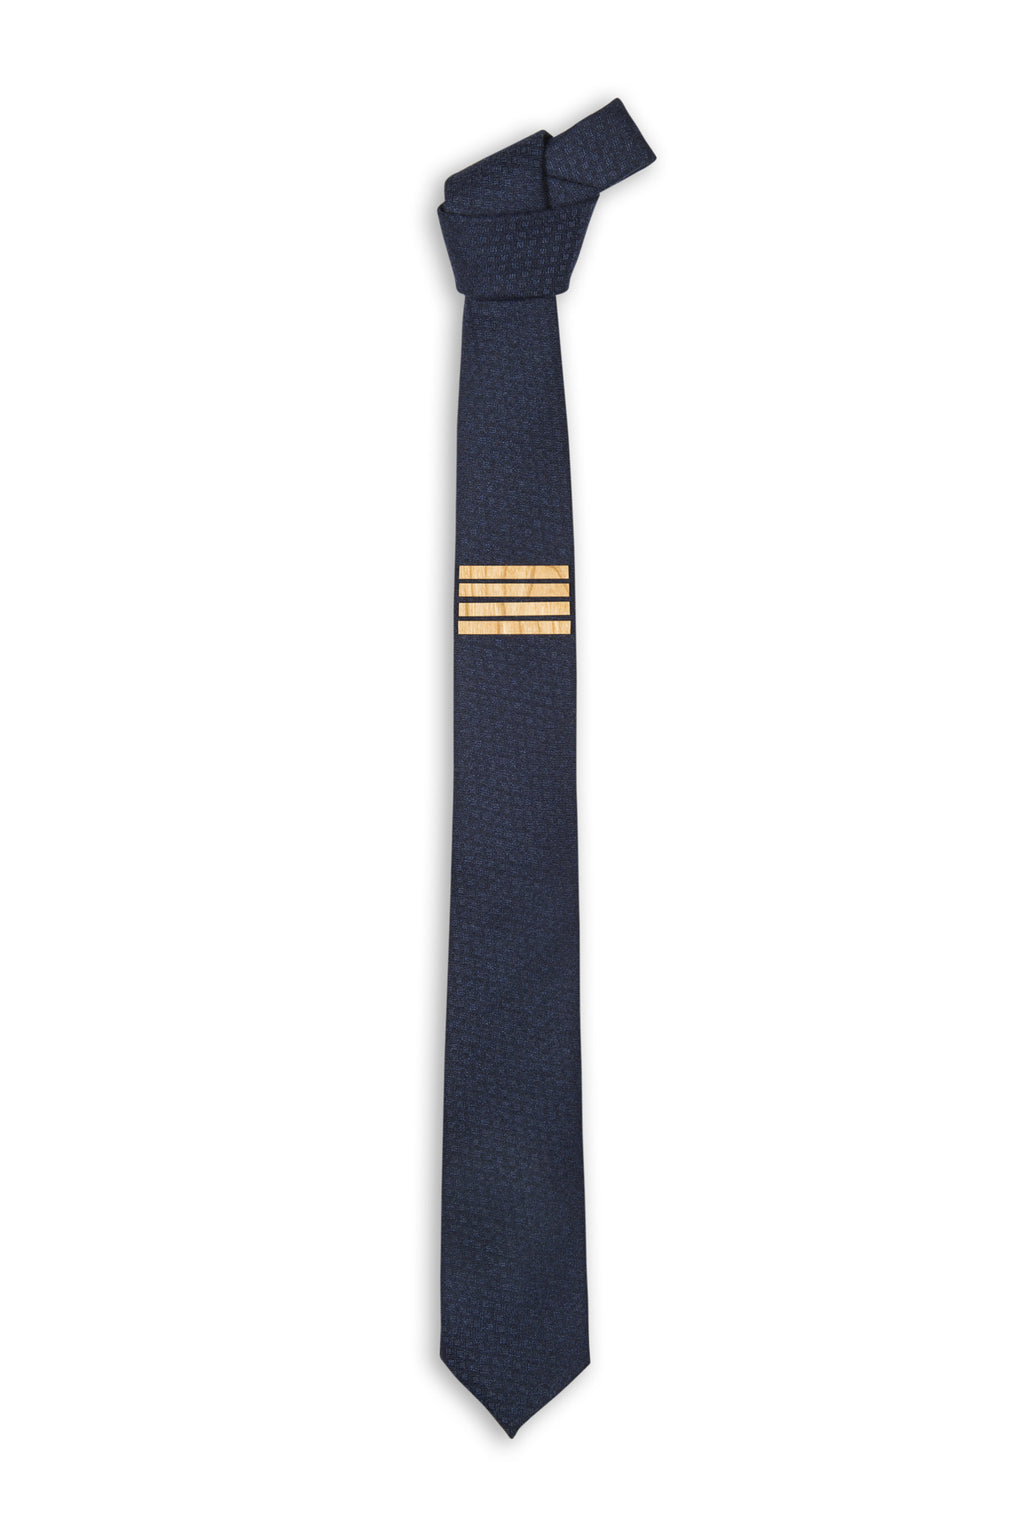 Cravate laine bleu avec ajout bois - Blue wool tie with wood pieces